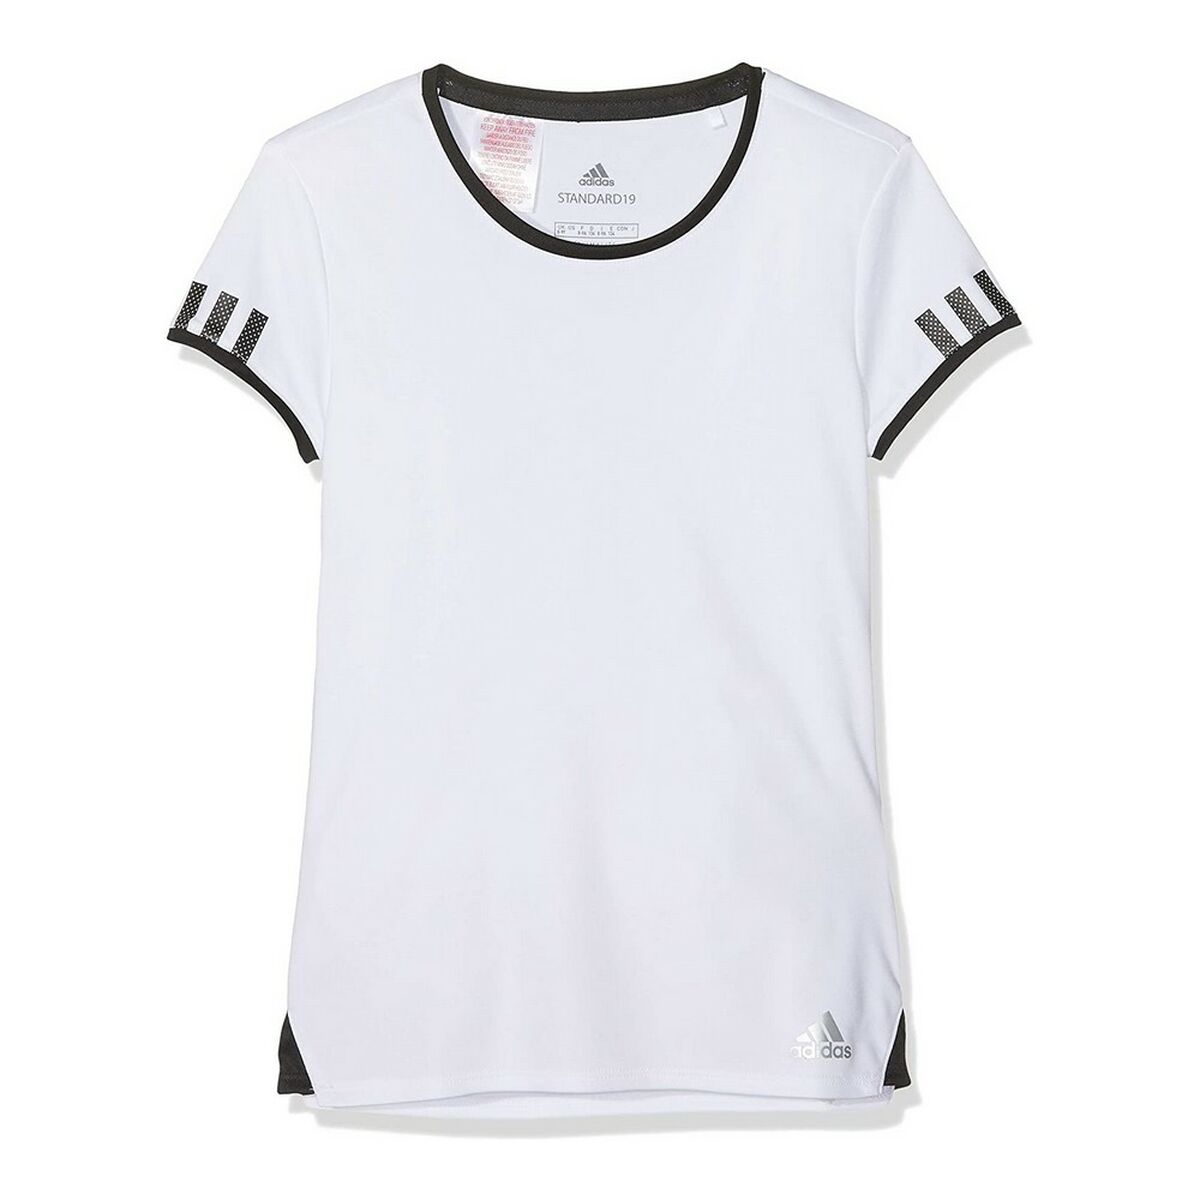 Adidas Kurzarm-T-Shirt für Kinder in Weiß, 6 Jahre, aus Polyester (ADIDAS CLUB TEE DU2464)